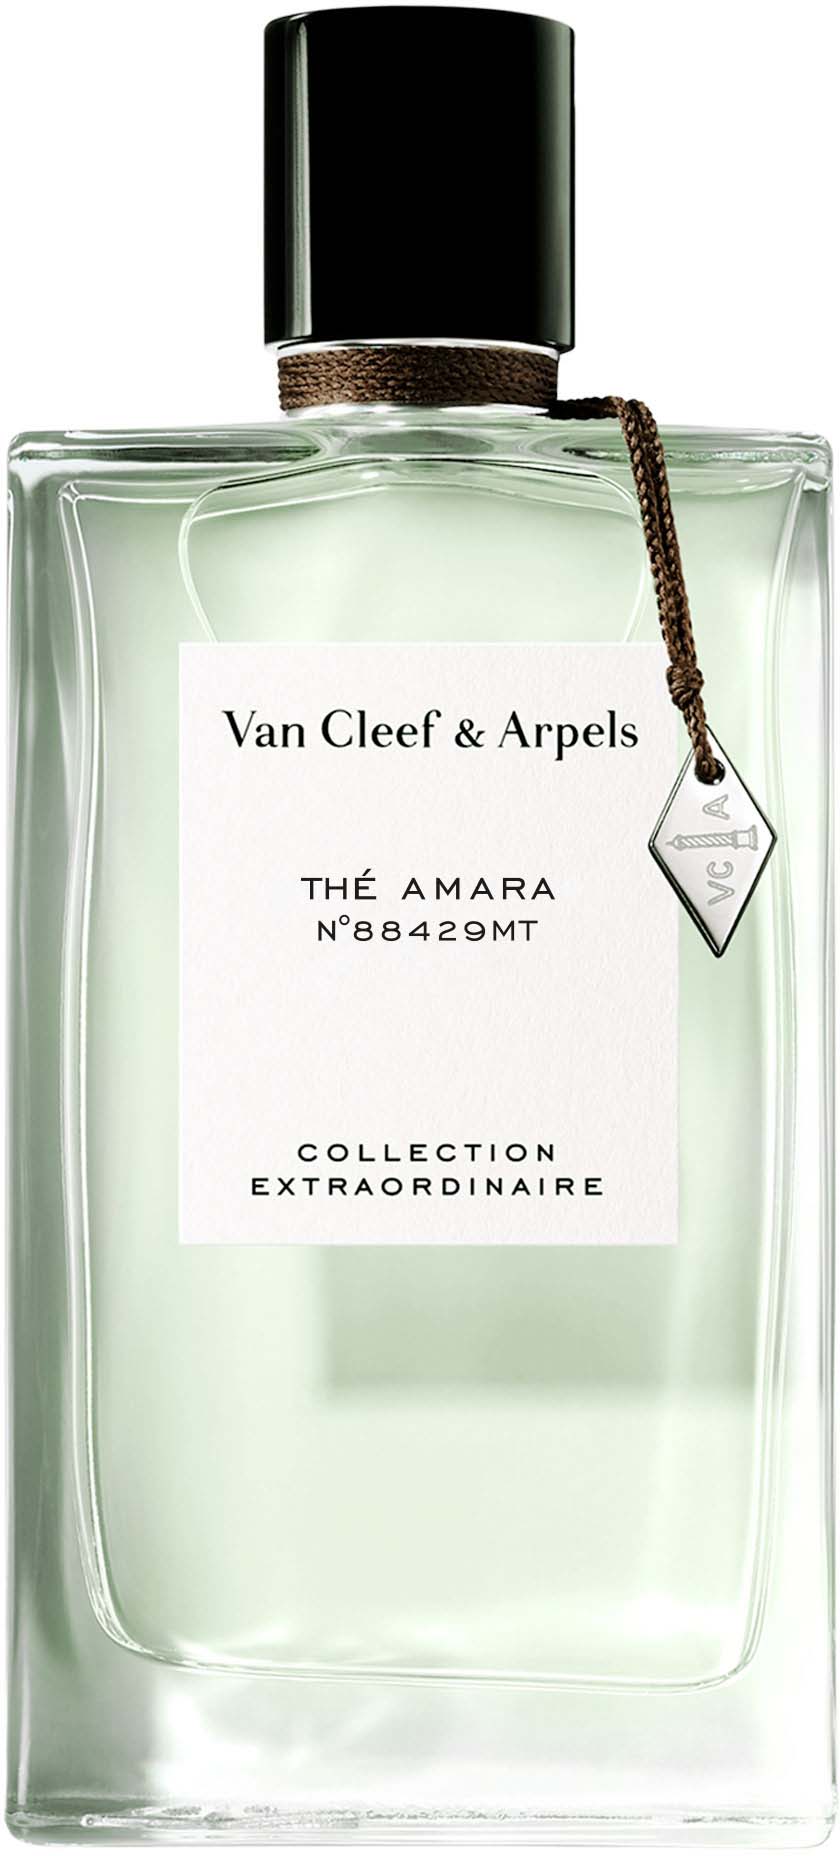 van cleef & arpels collection extraordinaire - the amara